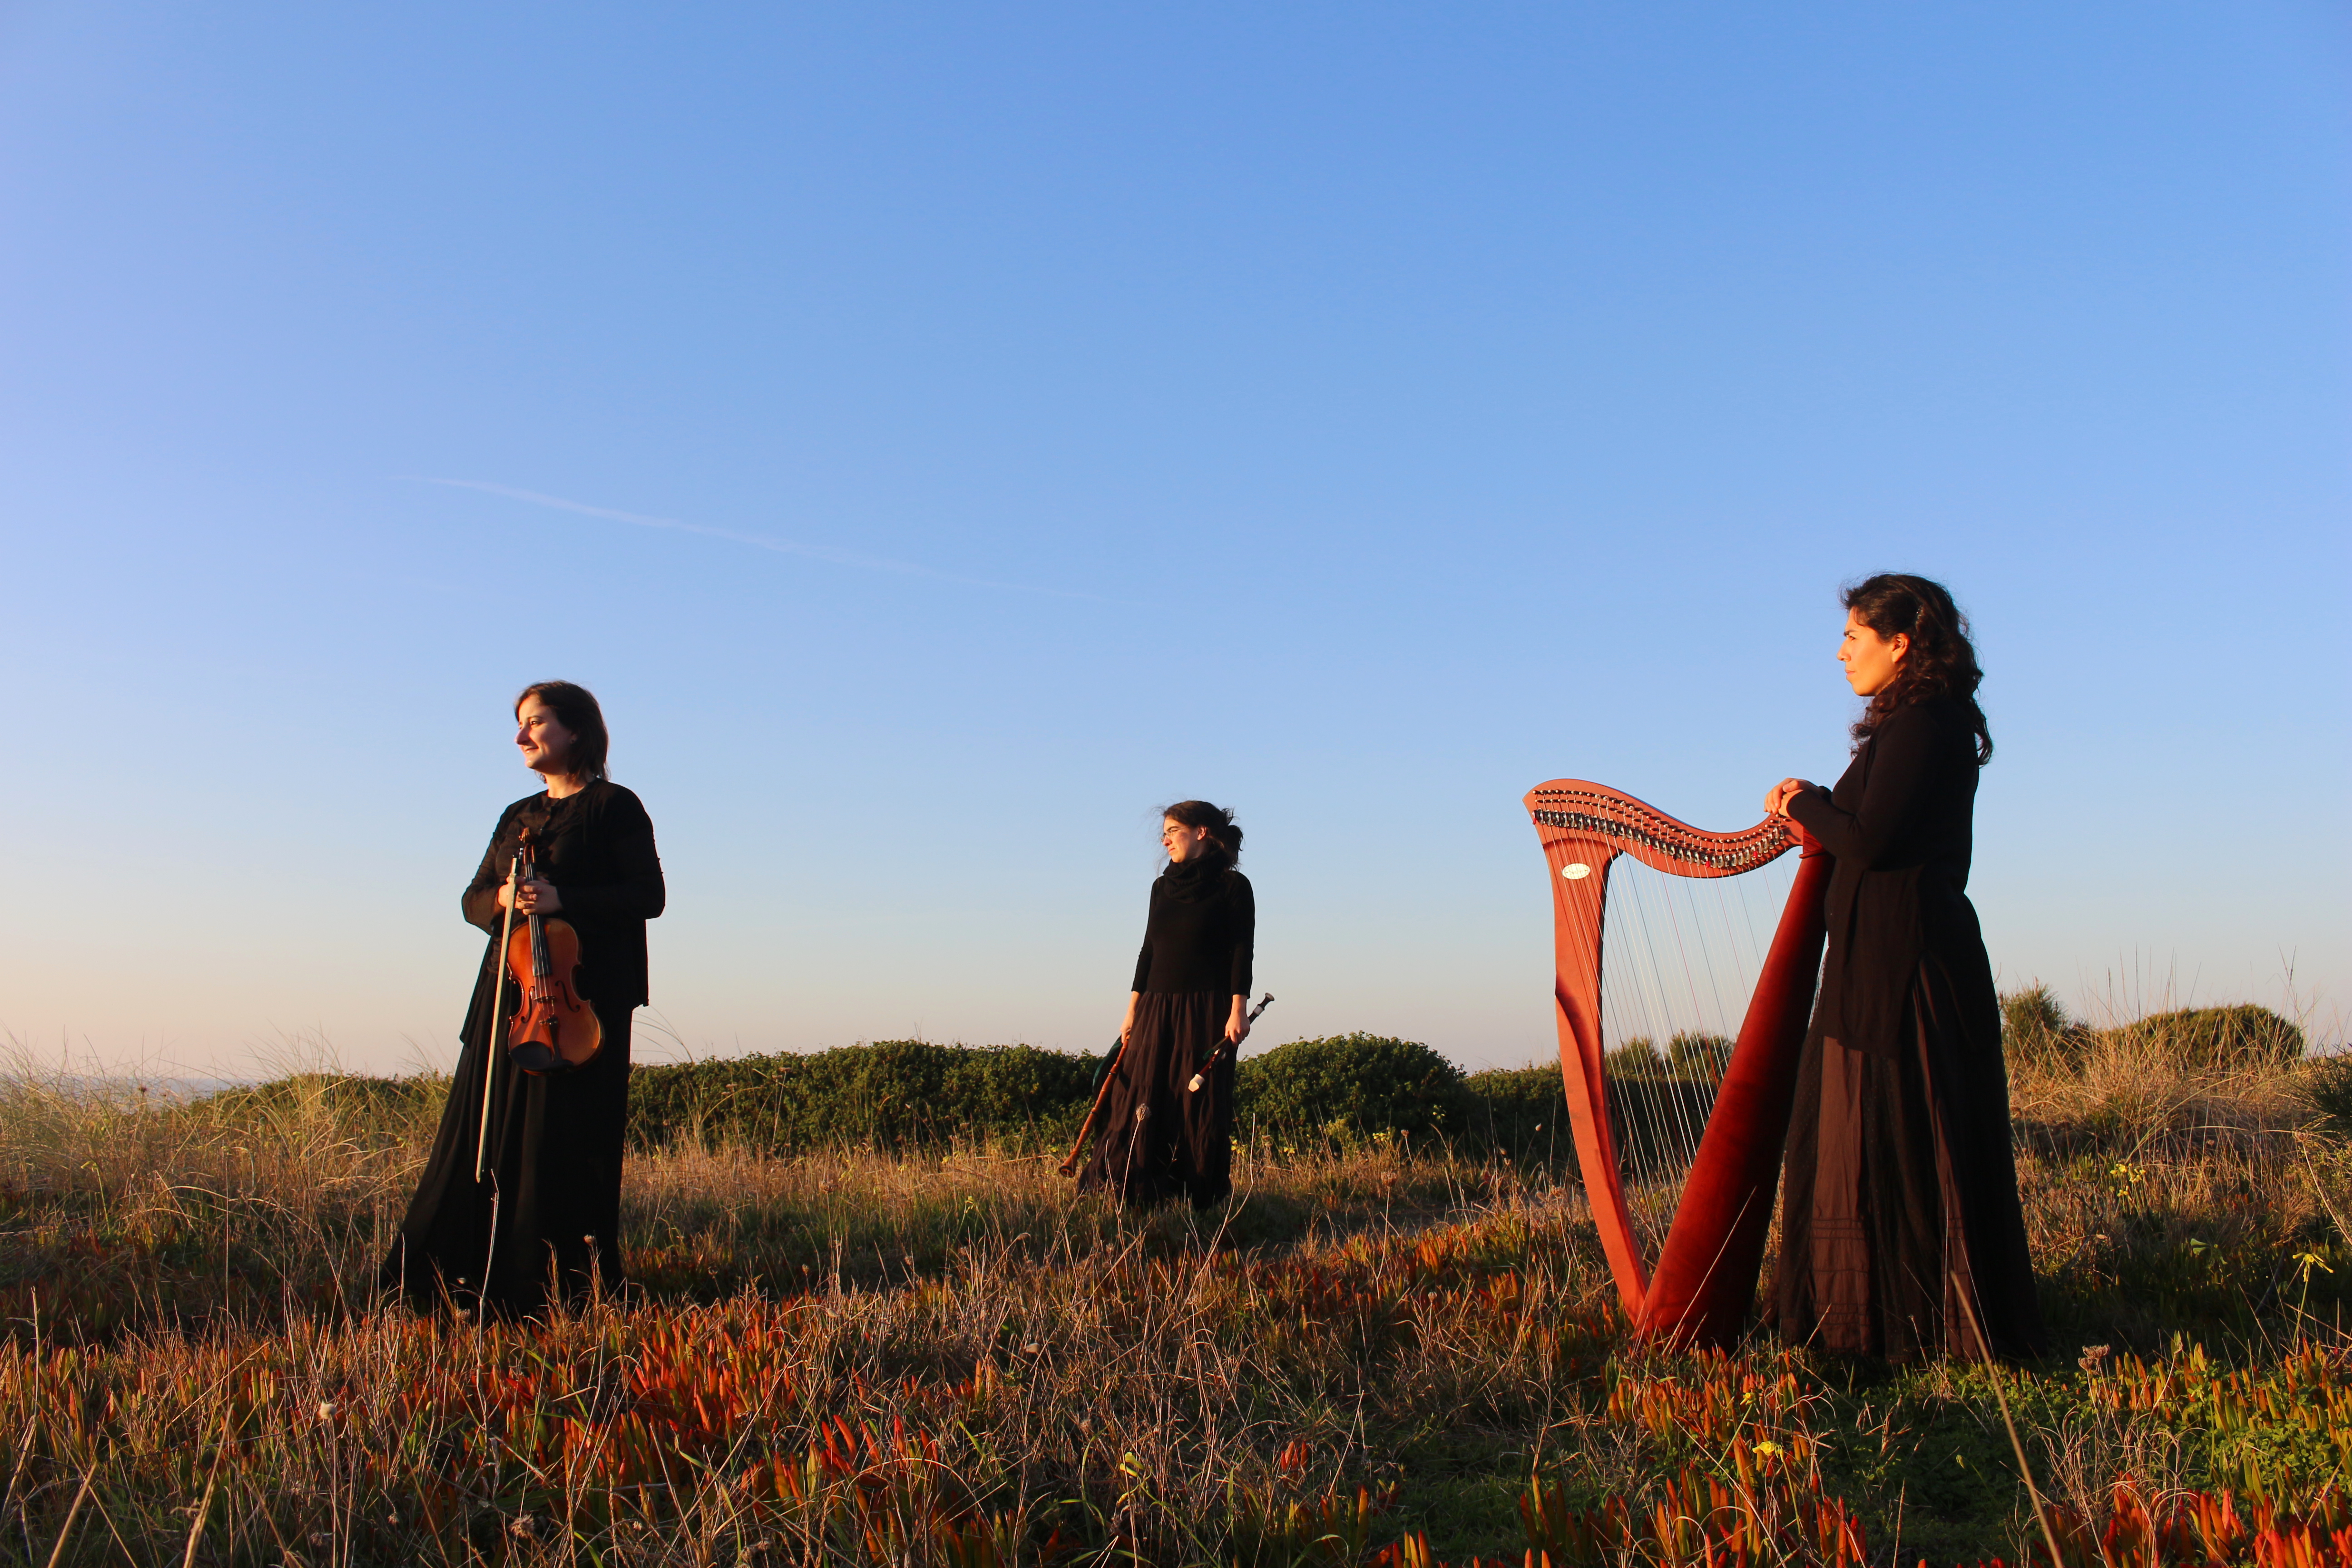 Três mulheres estão distribuídas ao longo de uma duna. As três estão vestidas de preto. A da esquerda tem um violino na mão, a do meio segura alguns instrumentos de sopro e a da direita tem uma harpa. A duna está coberta de vegetação, alguma verde, outra laranja e seca do sol. O céu está azul e límpido.